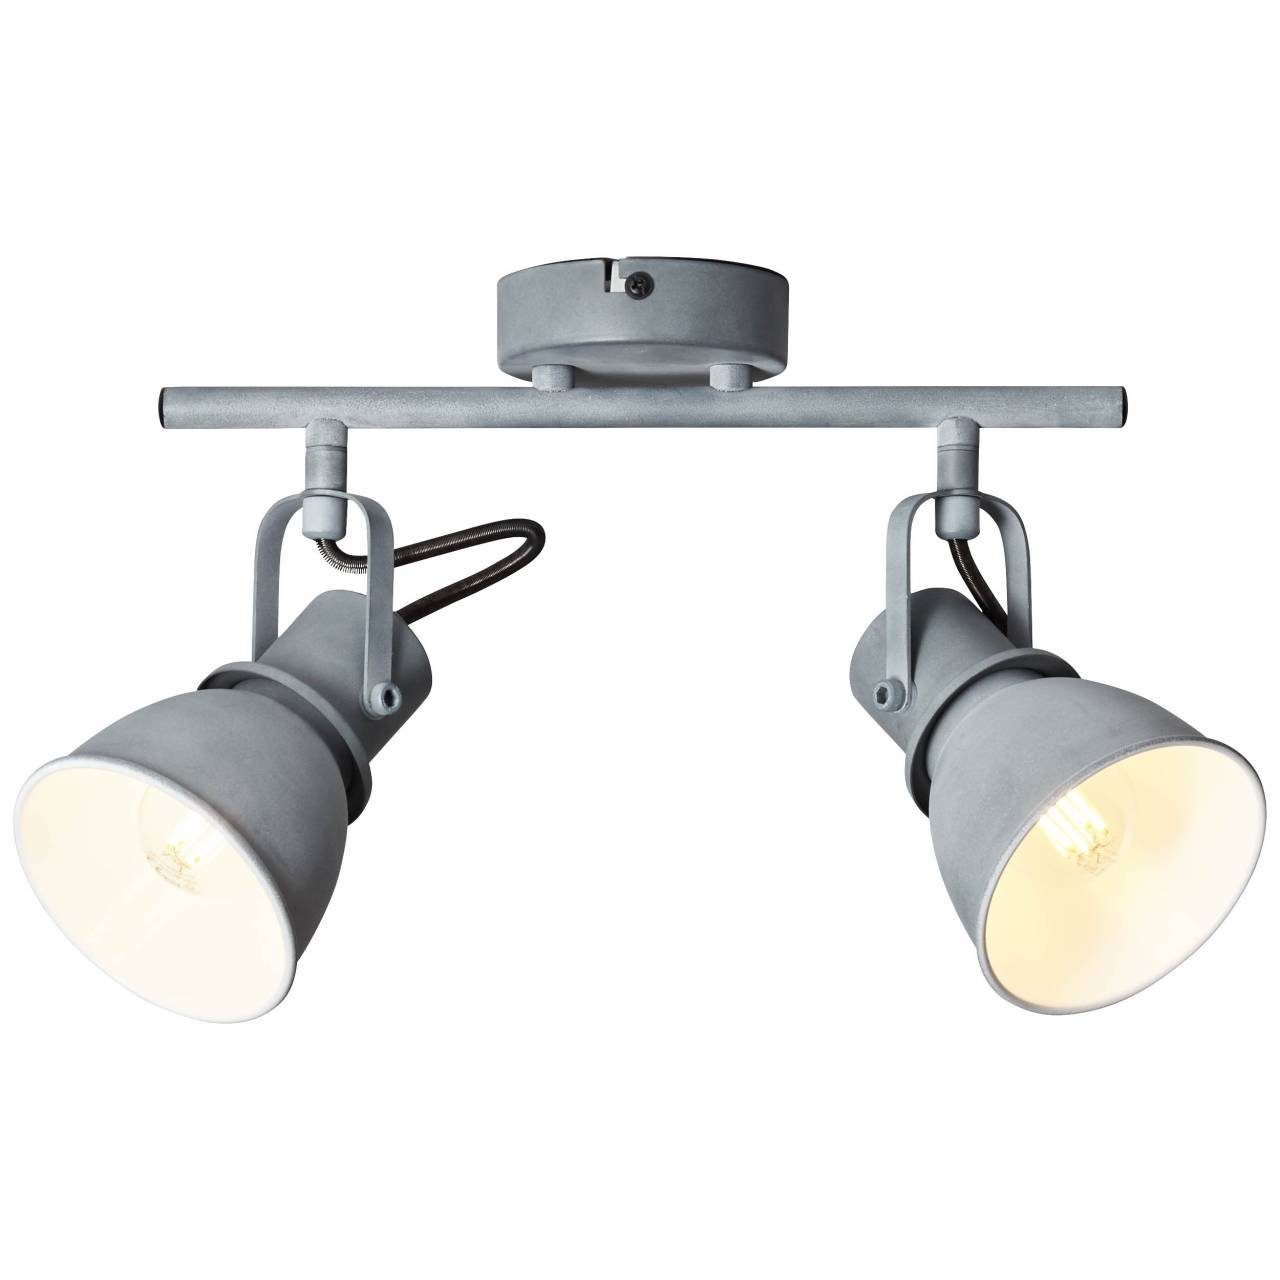 Brilliant Deckenleuchte Bogart, Lampe Bogart Spotrohr 2flg grau Beton 2x D45, E14, 25W, geeignet für | Deckenstrahler